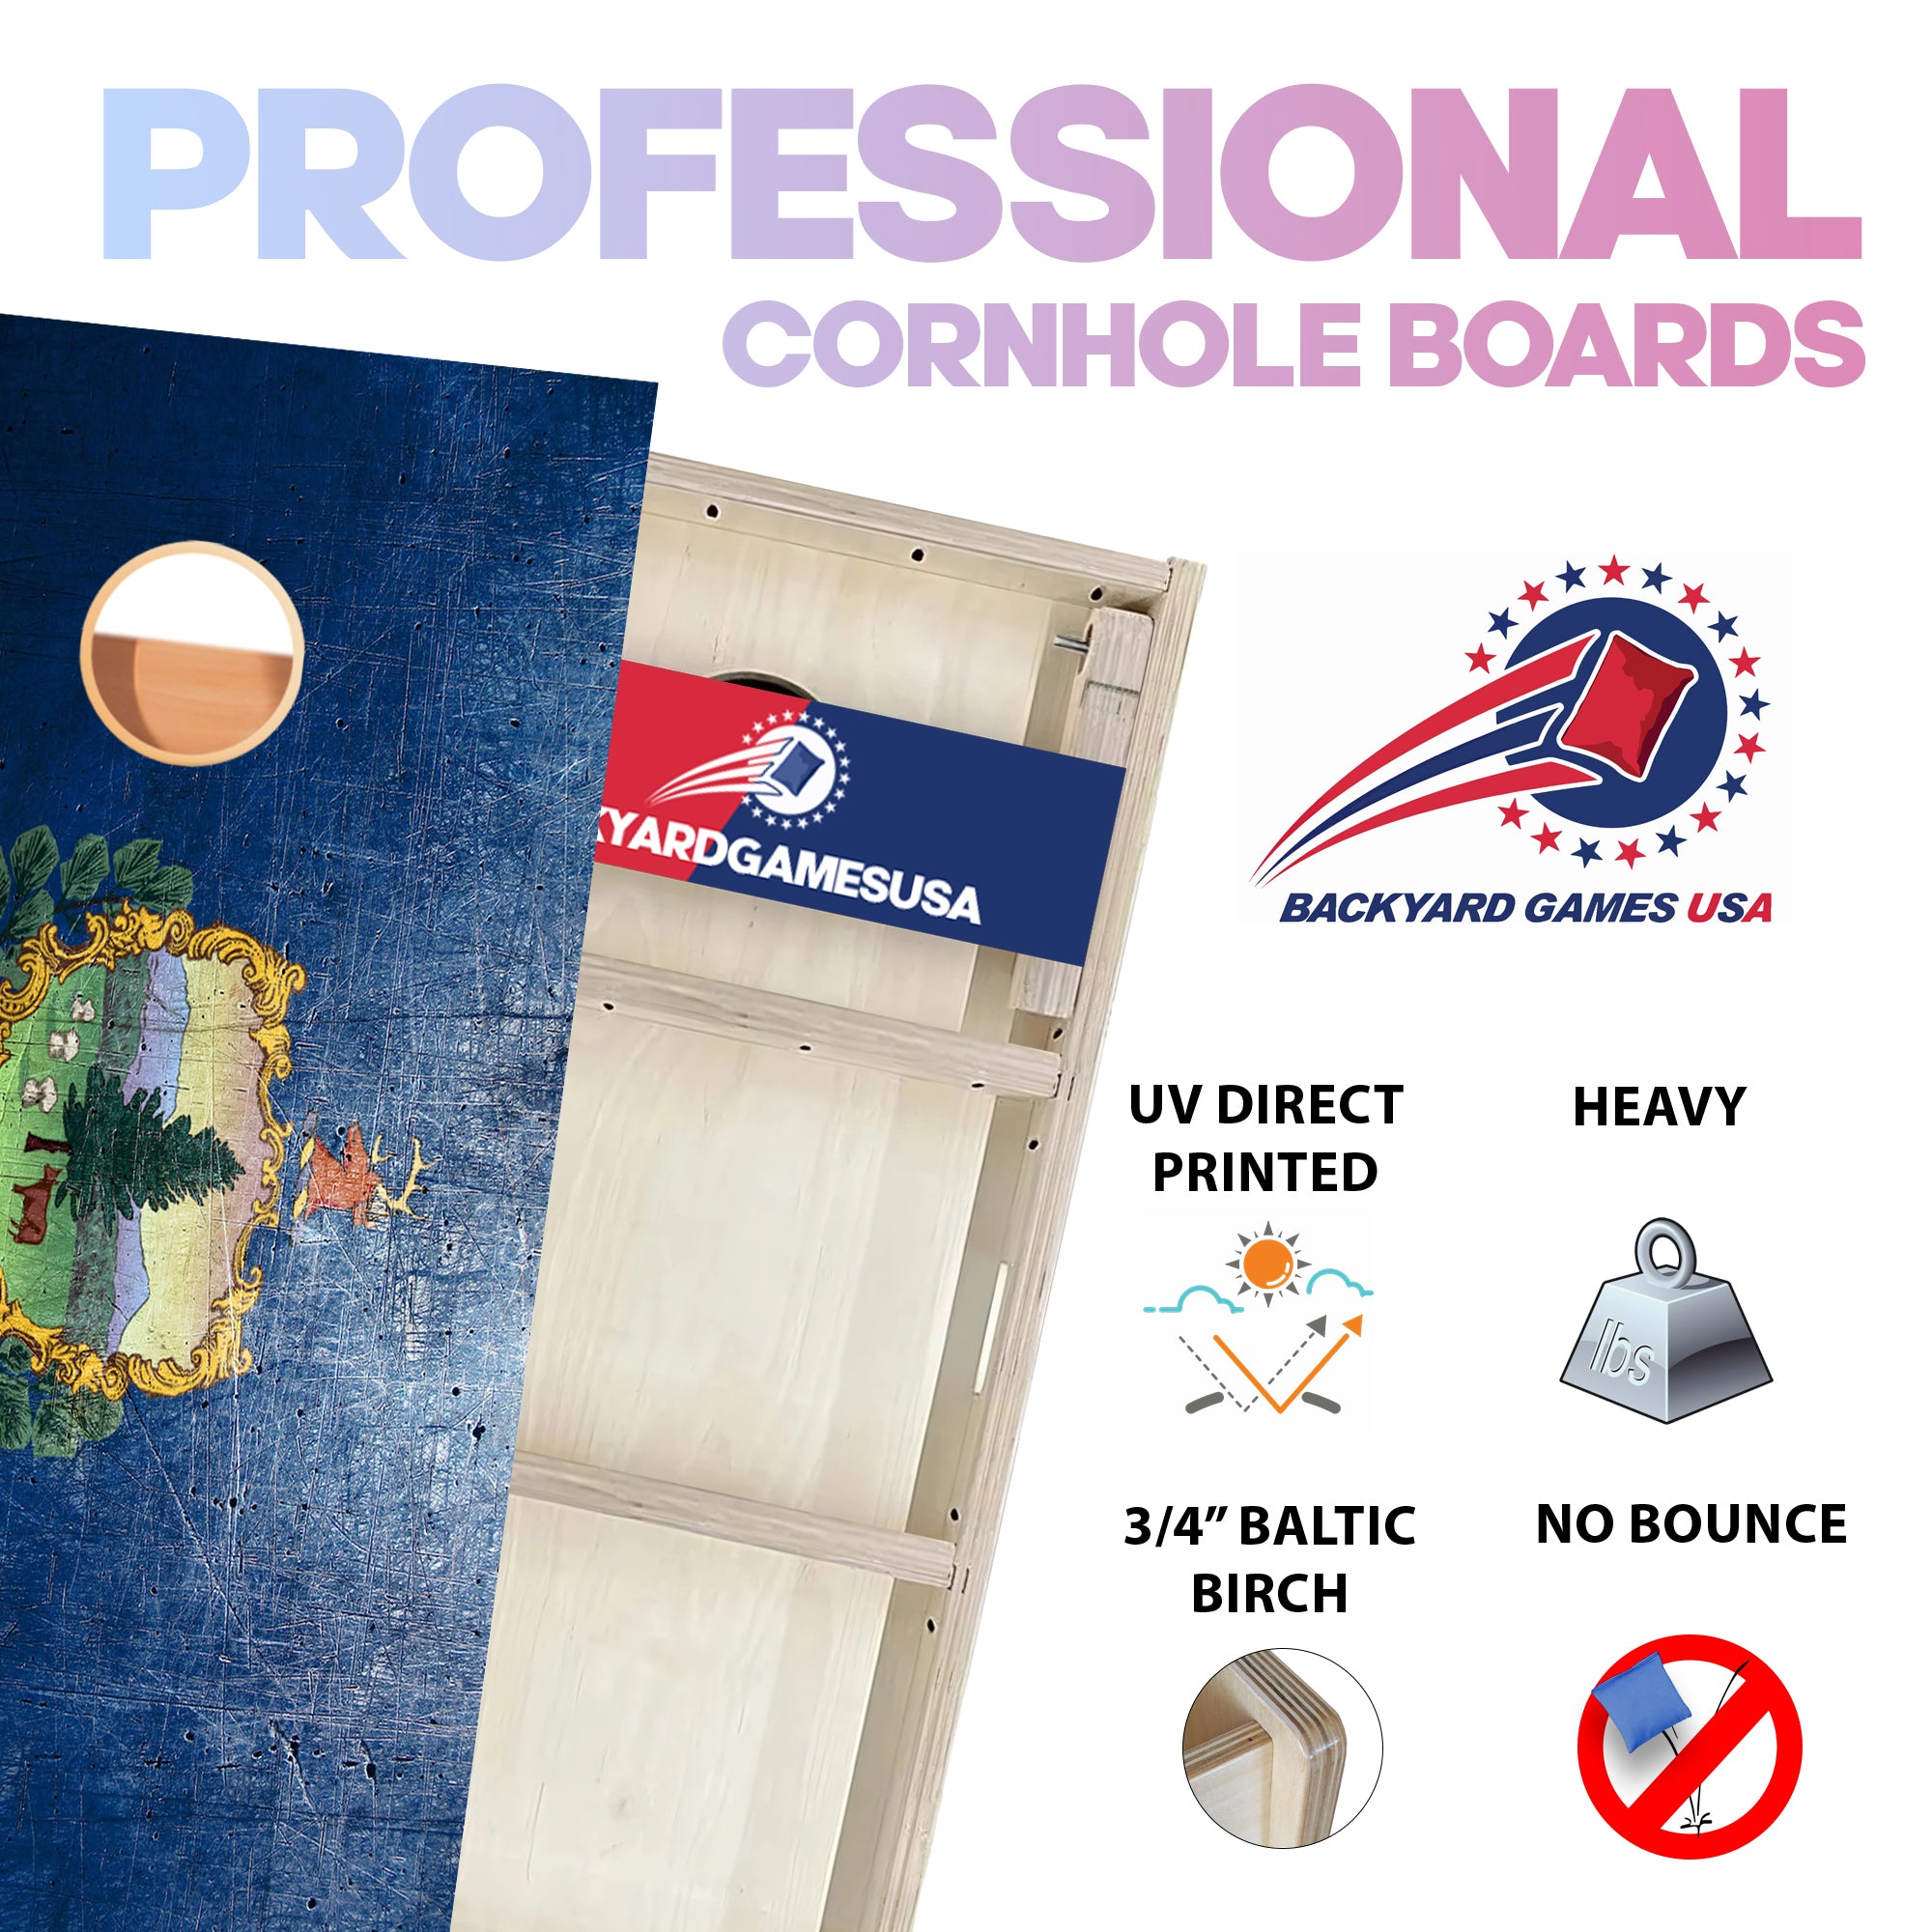 Vermont Professional Cornhole Boards